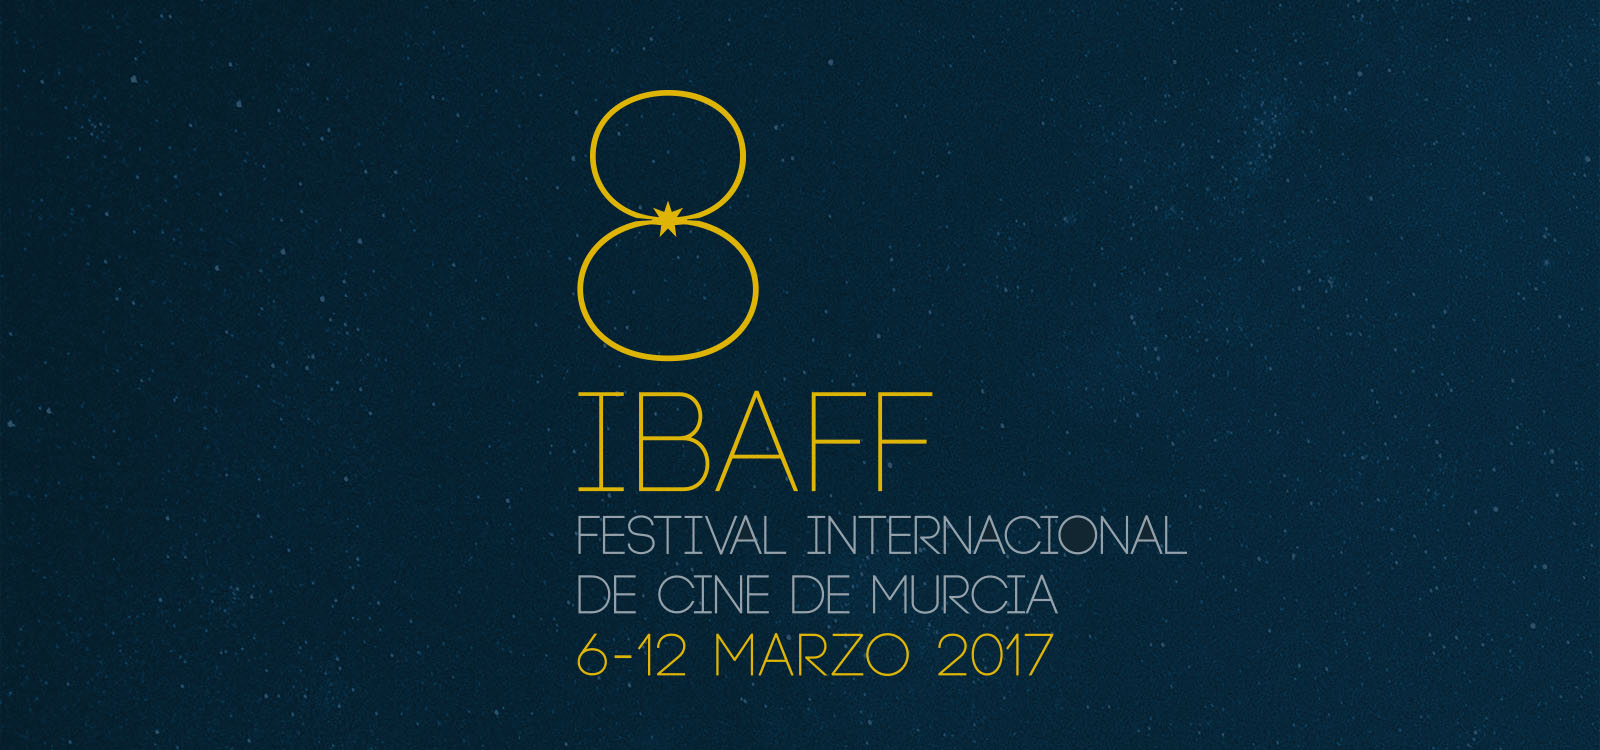 Damos la bienvenida al IBAFF, la octava edición del Festival Internacional de cine de Murcia